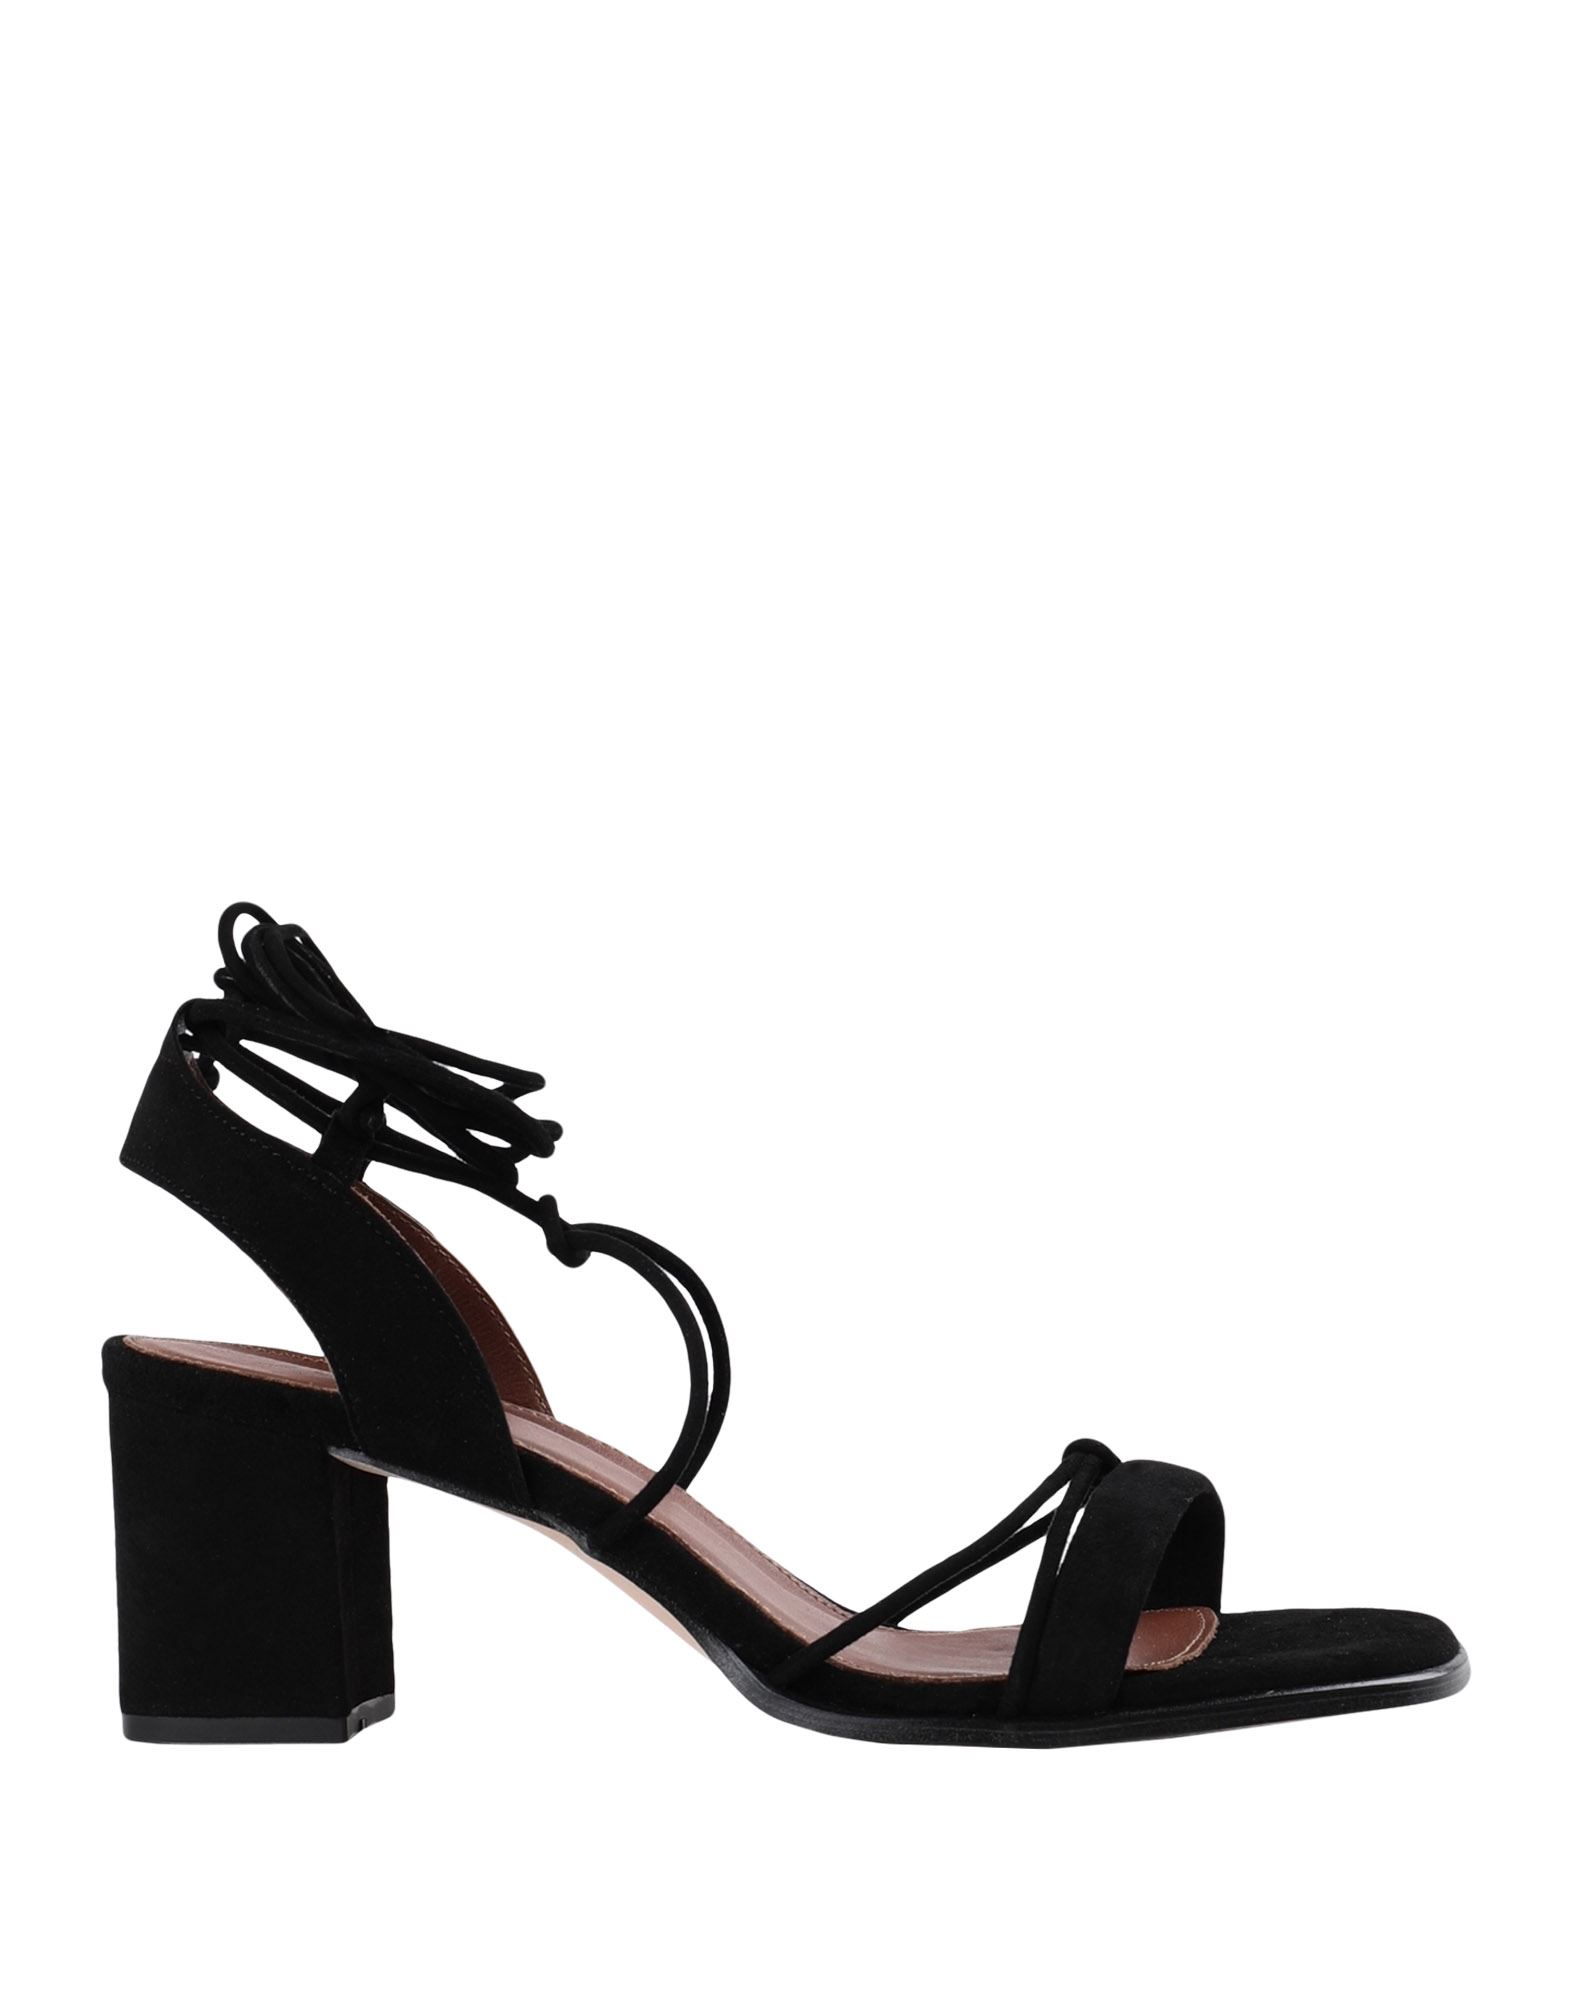 Shop Alohas Woman Sandals Black Size 7.5 Soft Leather